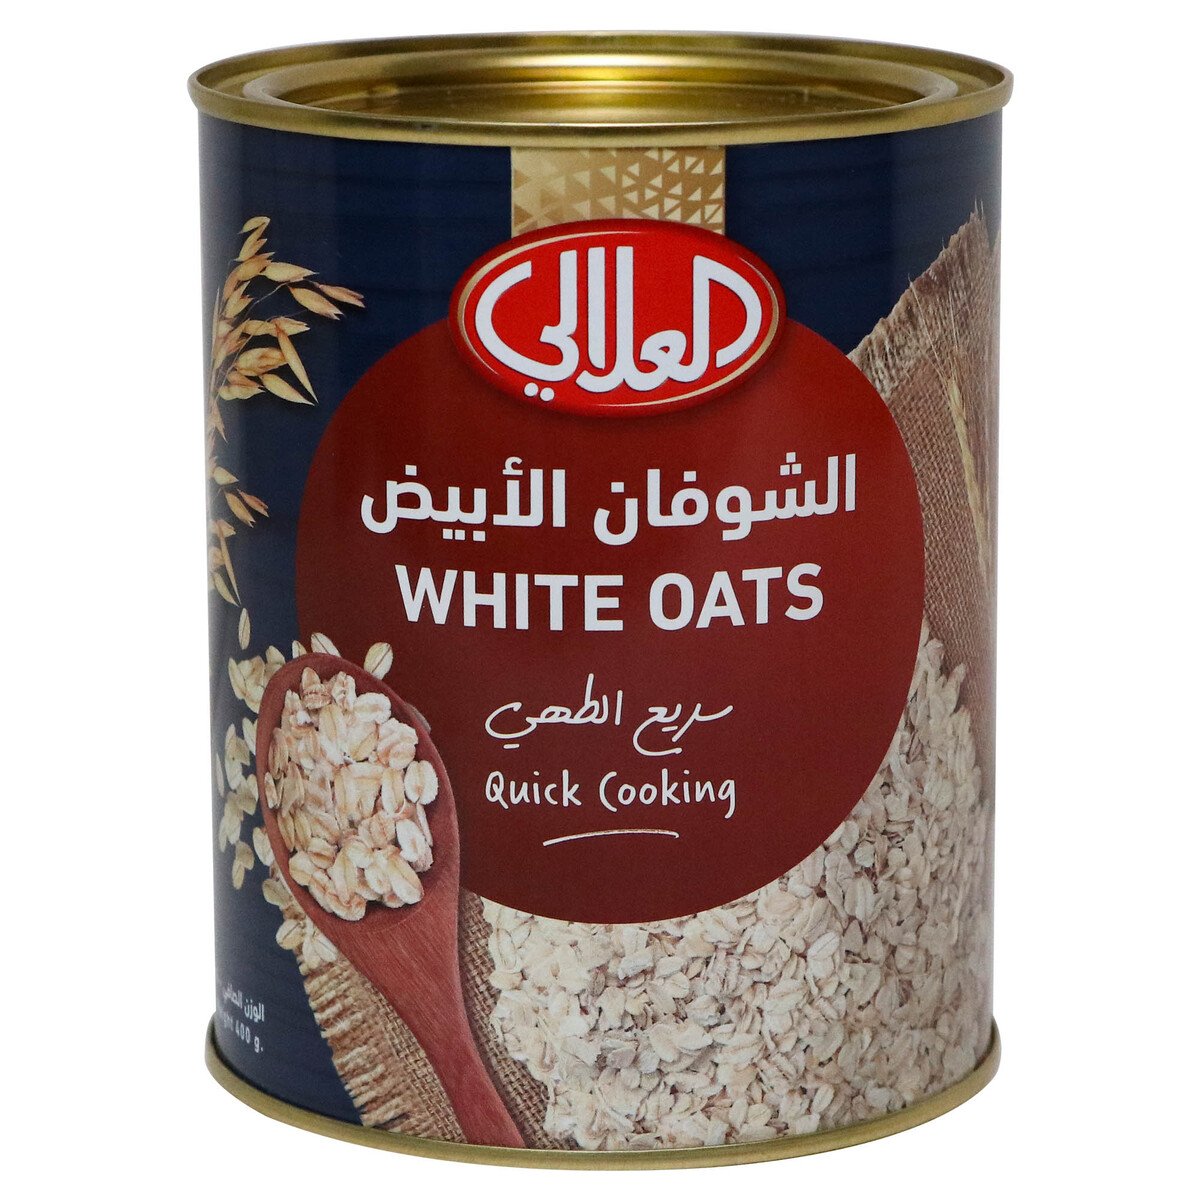 Buy Al Alali White Oats 400 g Online at Best Price | Oats | Lulu KSA in Saudi Arabia